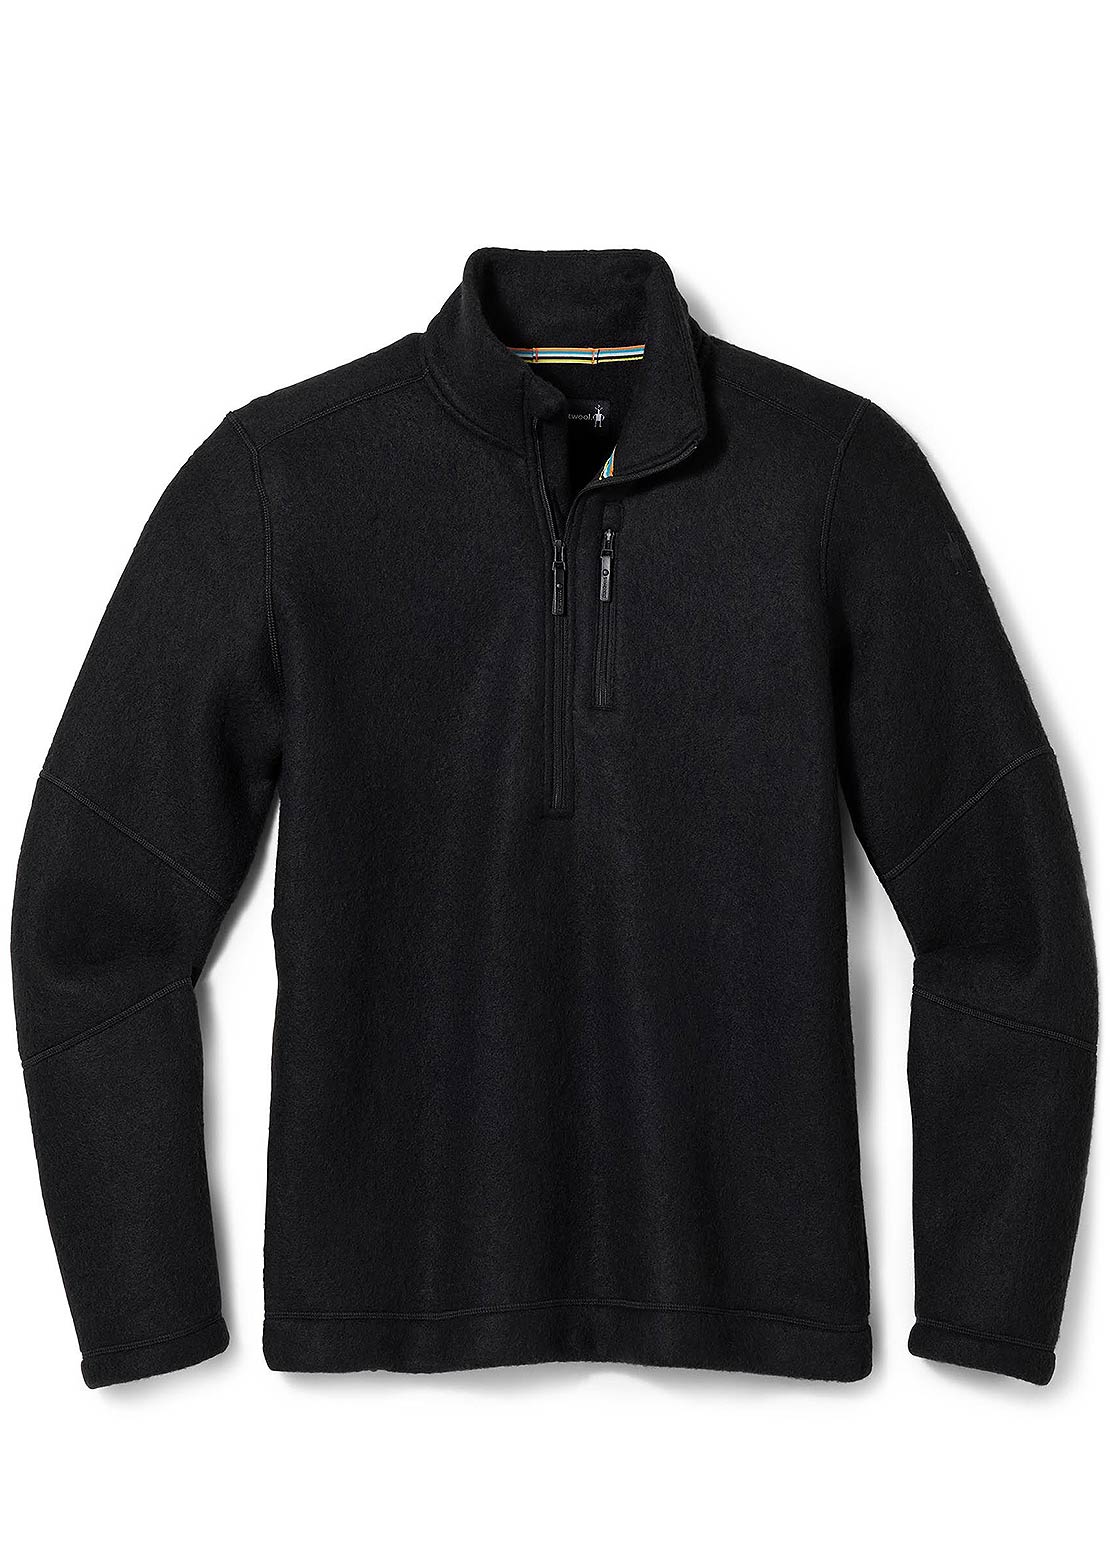 Smartwool Men's Hudson Trail Fleece Half Zip Sweater - PRFO Sports